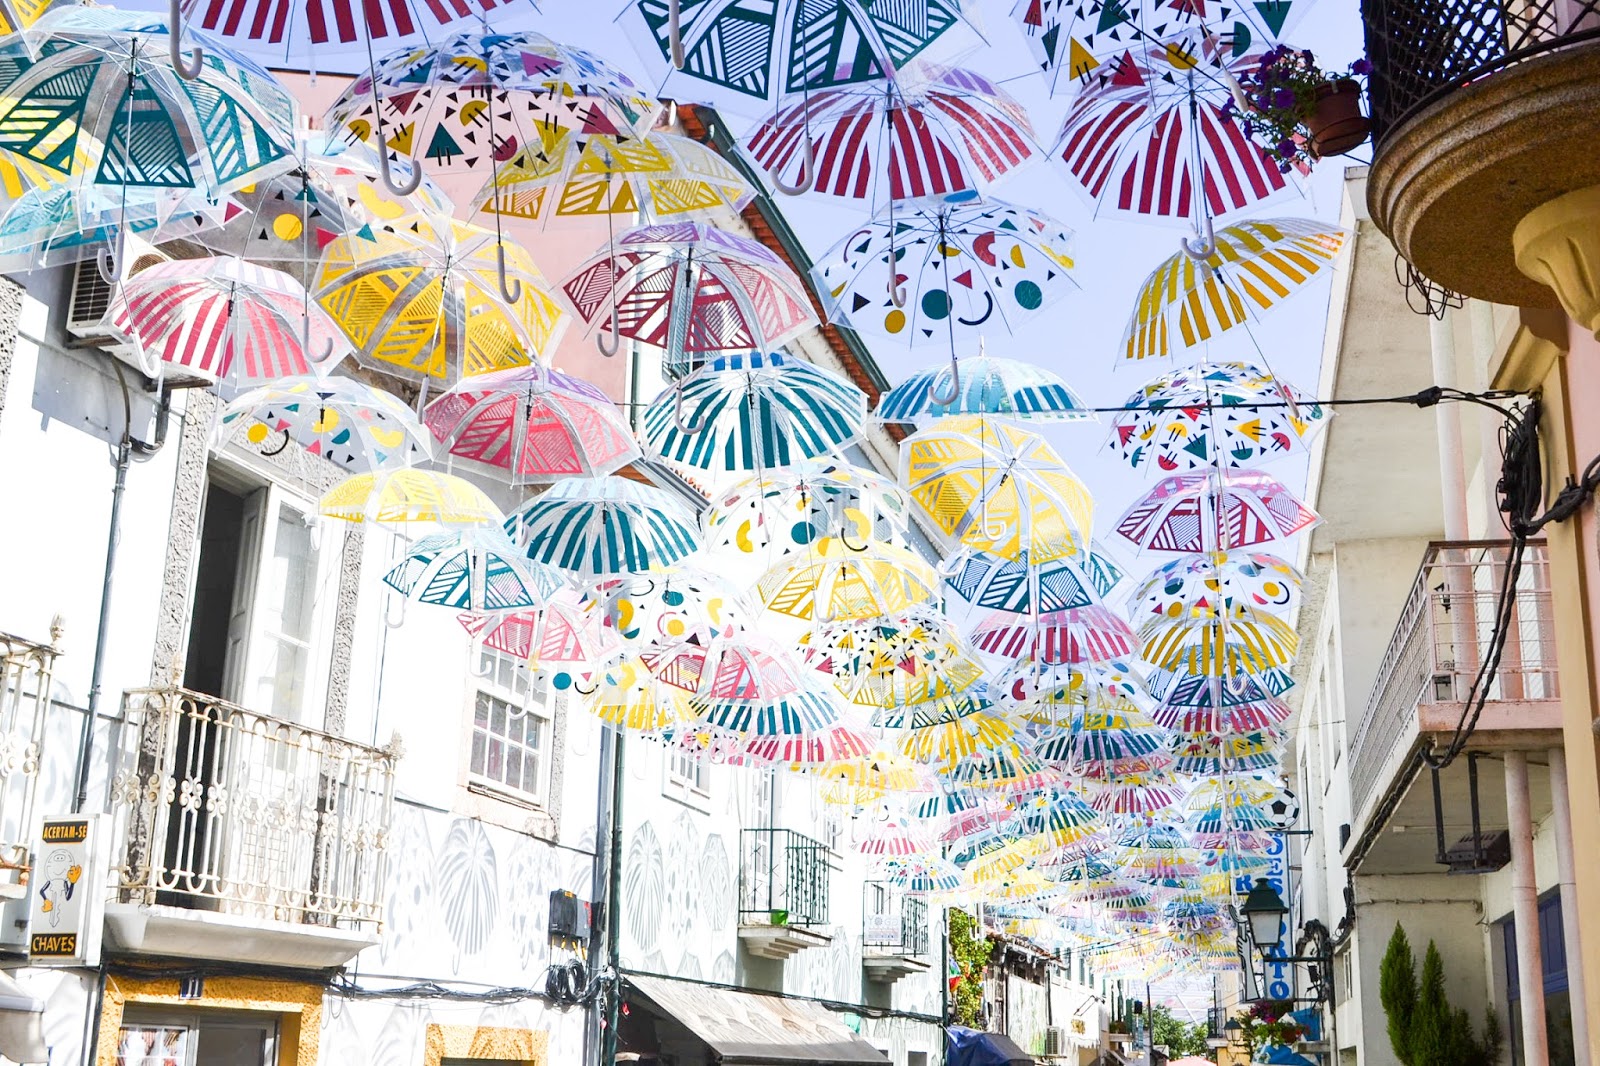 Águeda, Aveiro, Umbrellas sky project, Portugal, Portugalsko, ejnets